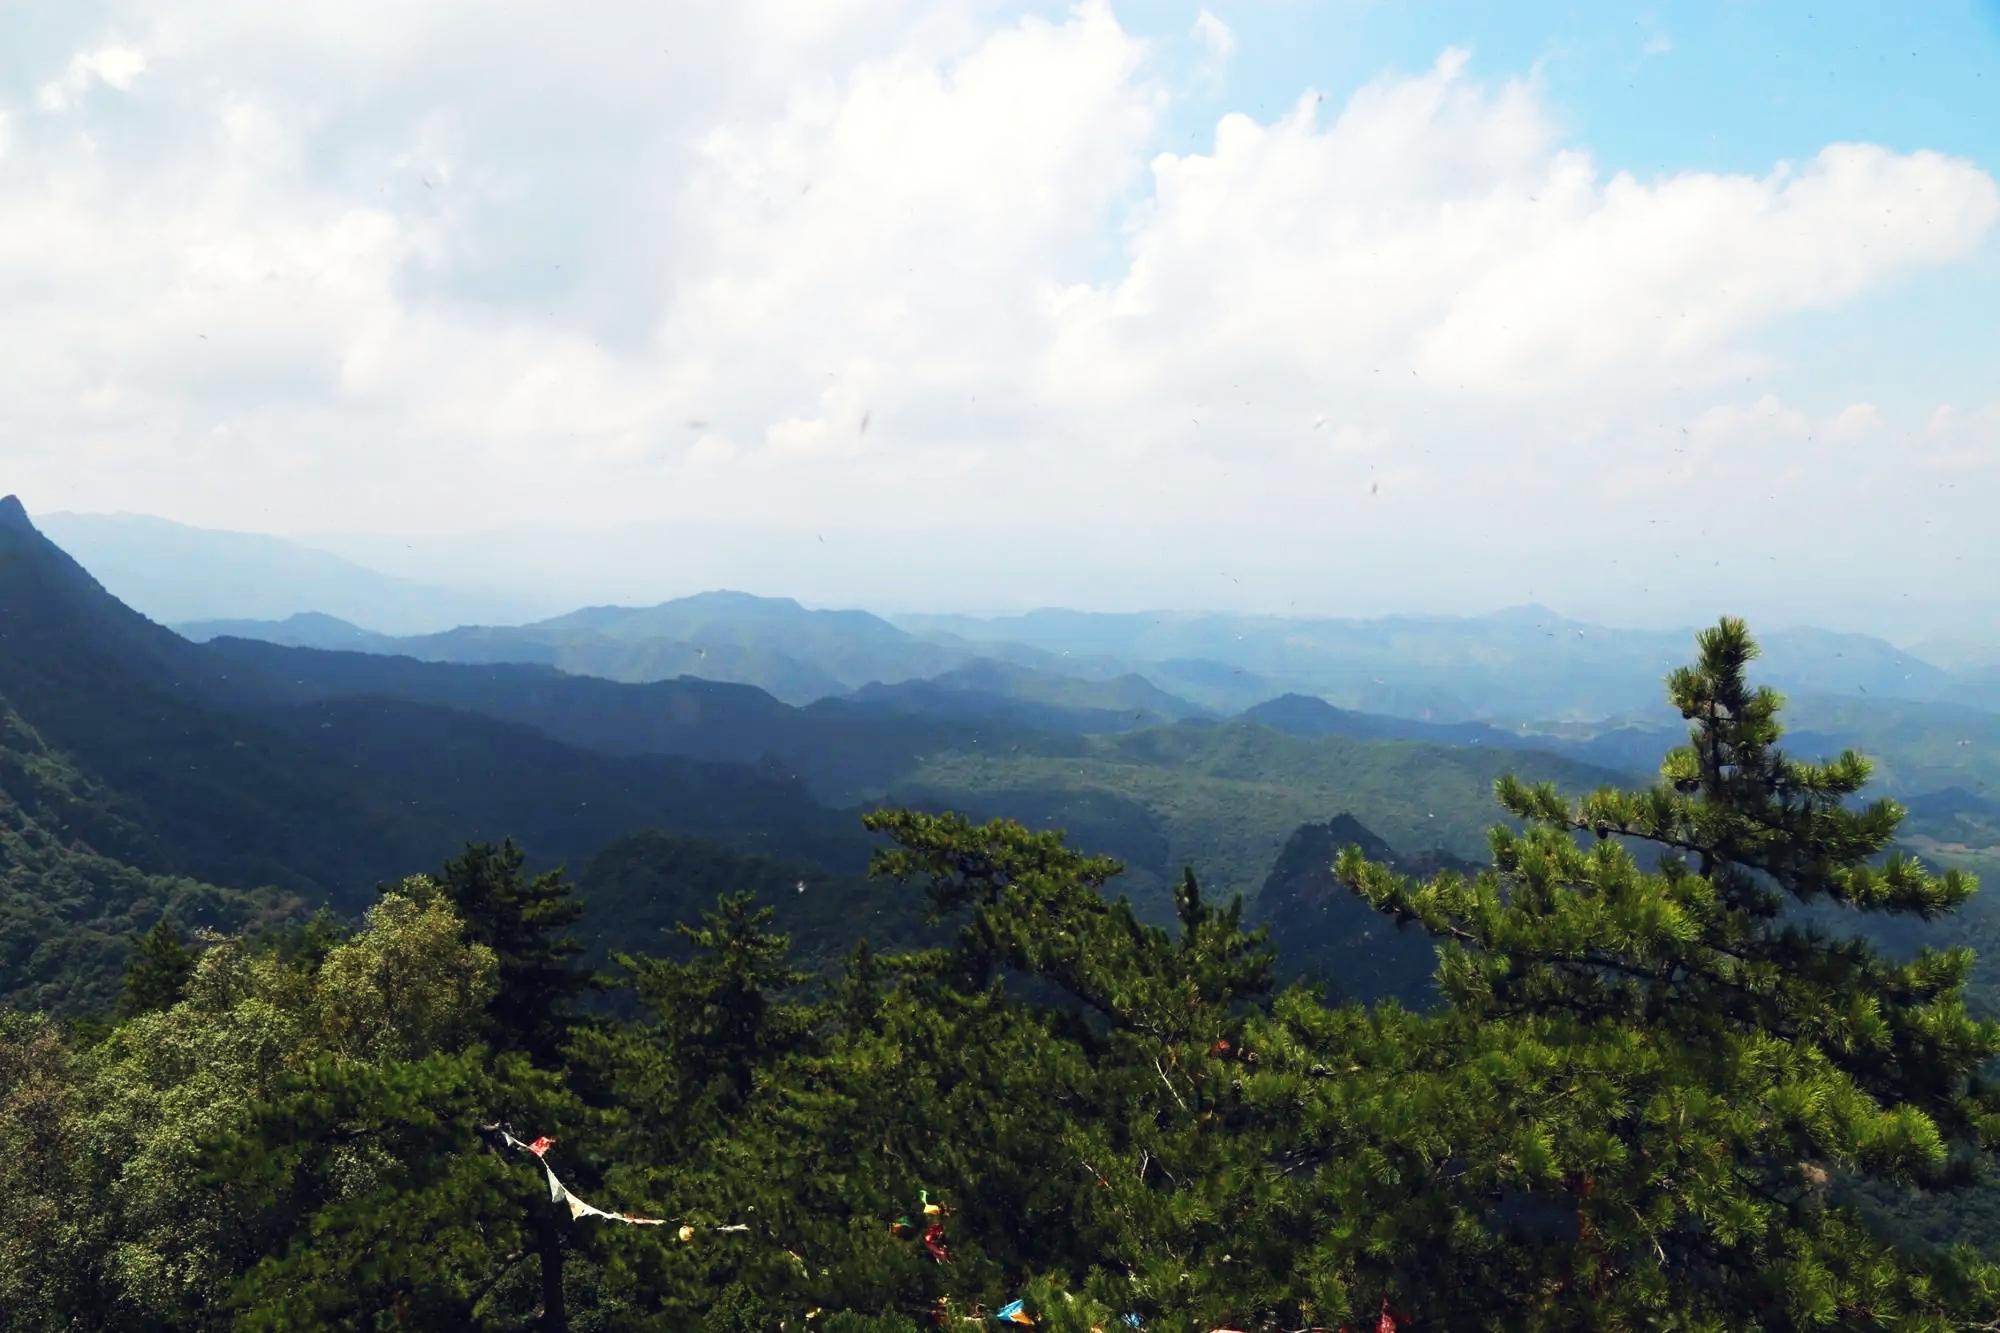 石门山森林公园:自然与历史的交响 石门山森林公园位于山东济宁的东部